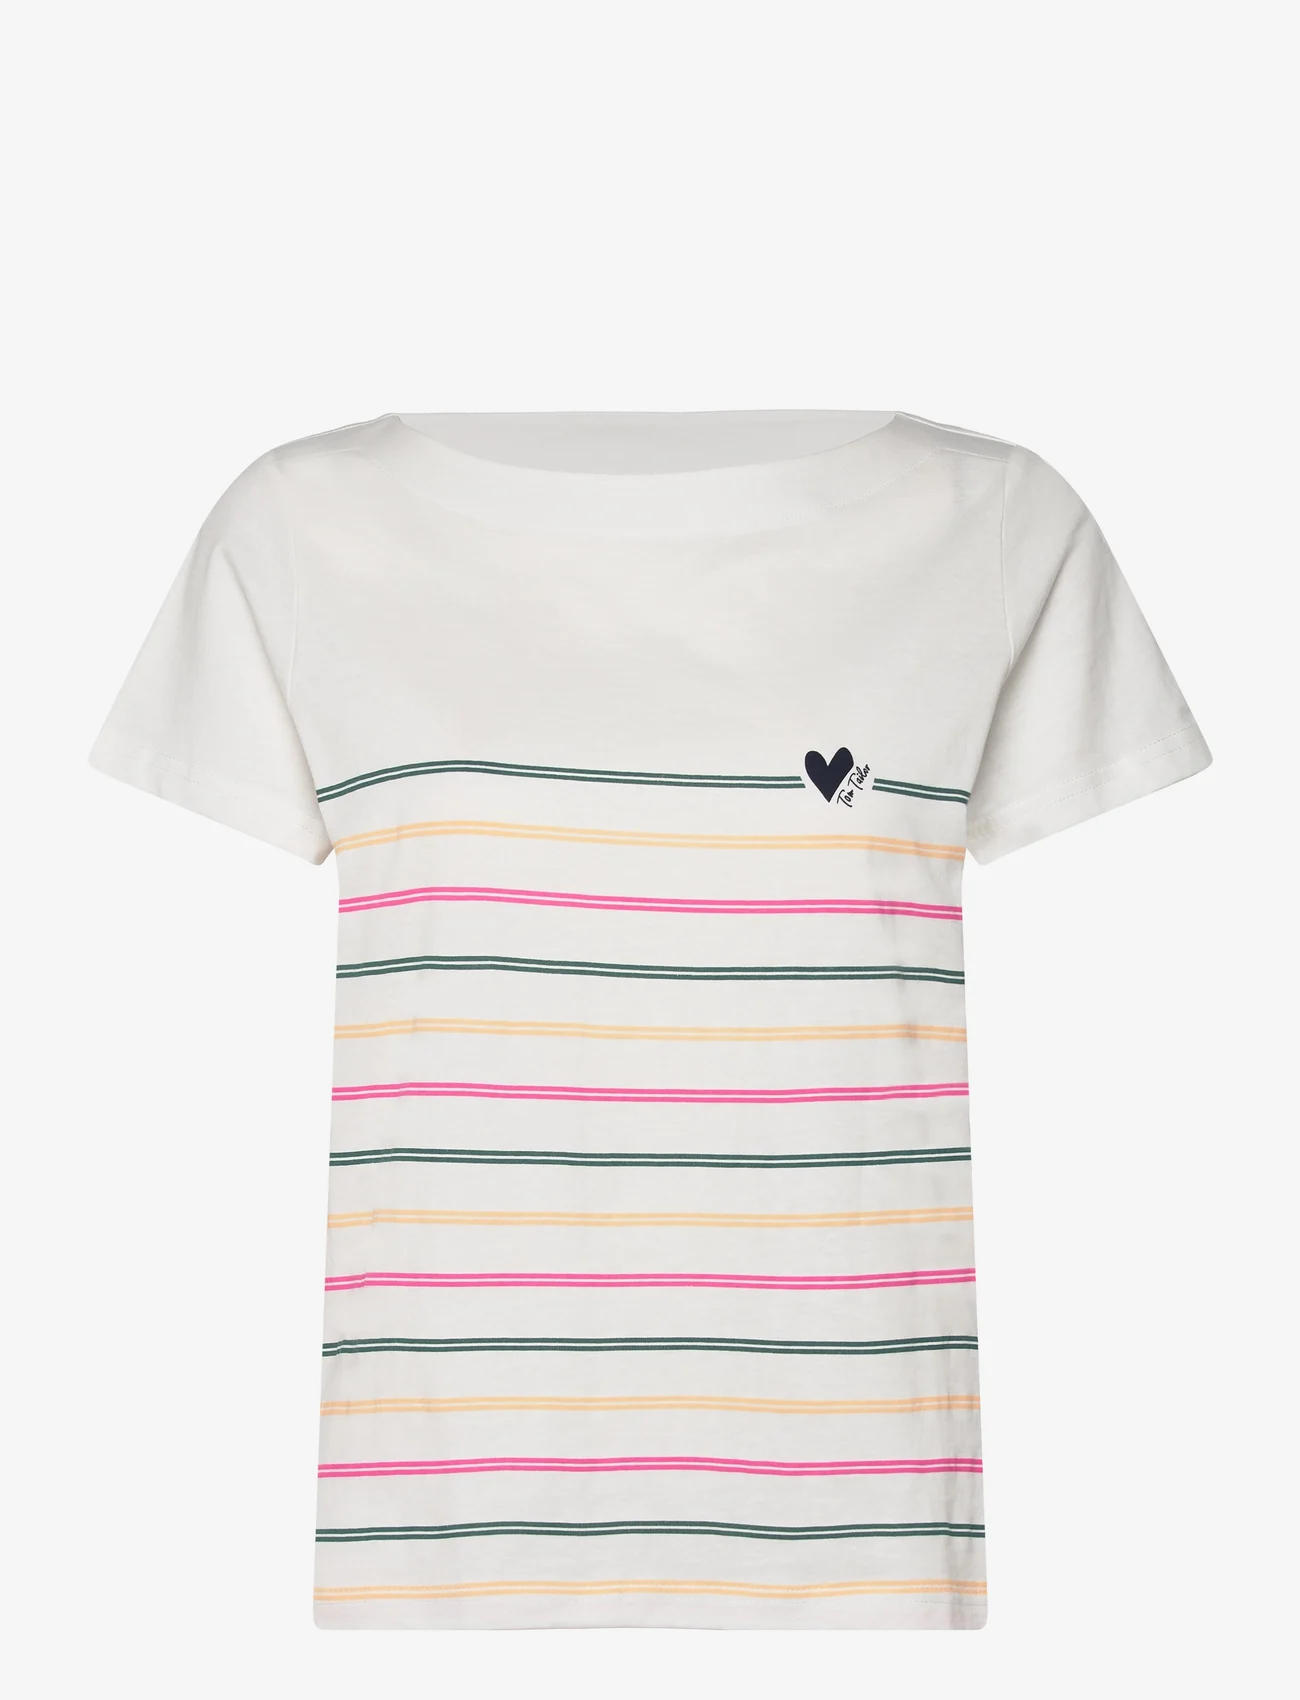 Tom Tailor - T-shirt boat neck stripe - zemākās cenas - whisper white - 0